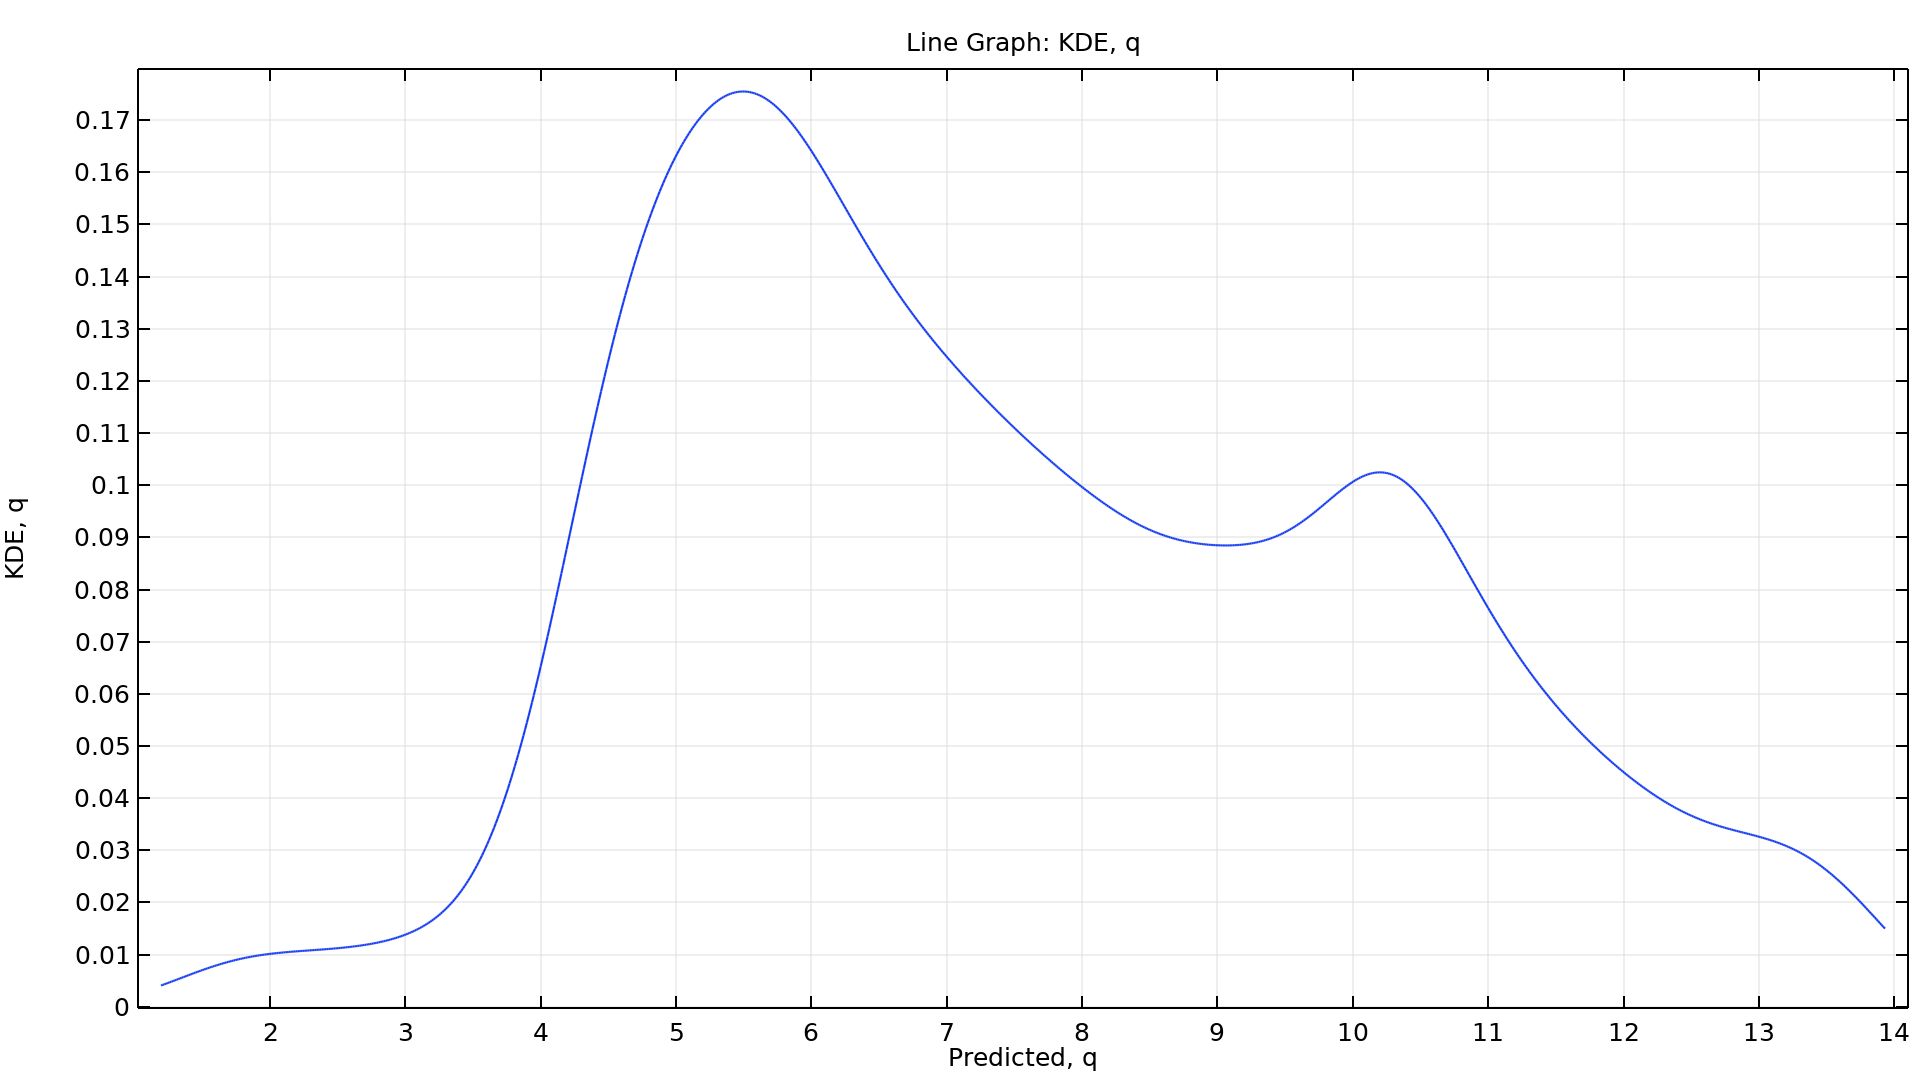 KDE を Y 軸, Predicted を X 軸としたカーネル密度推定による折れ線グラフ.